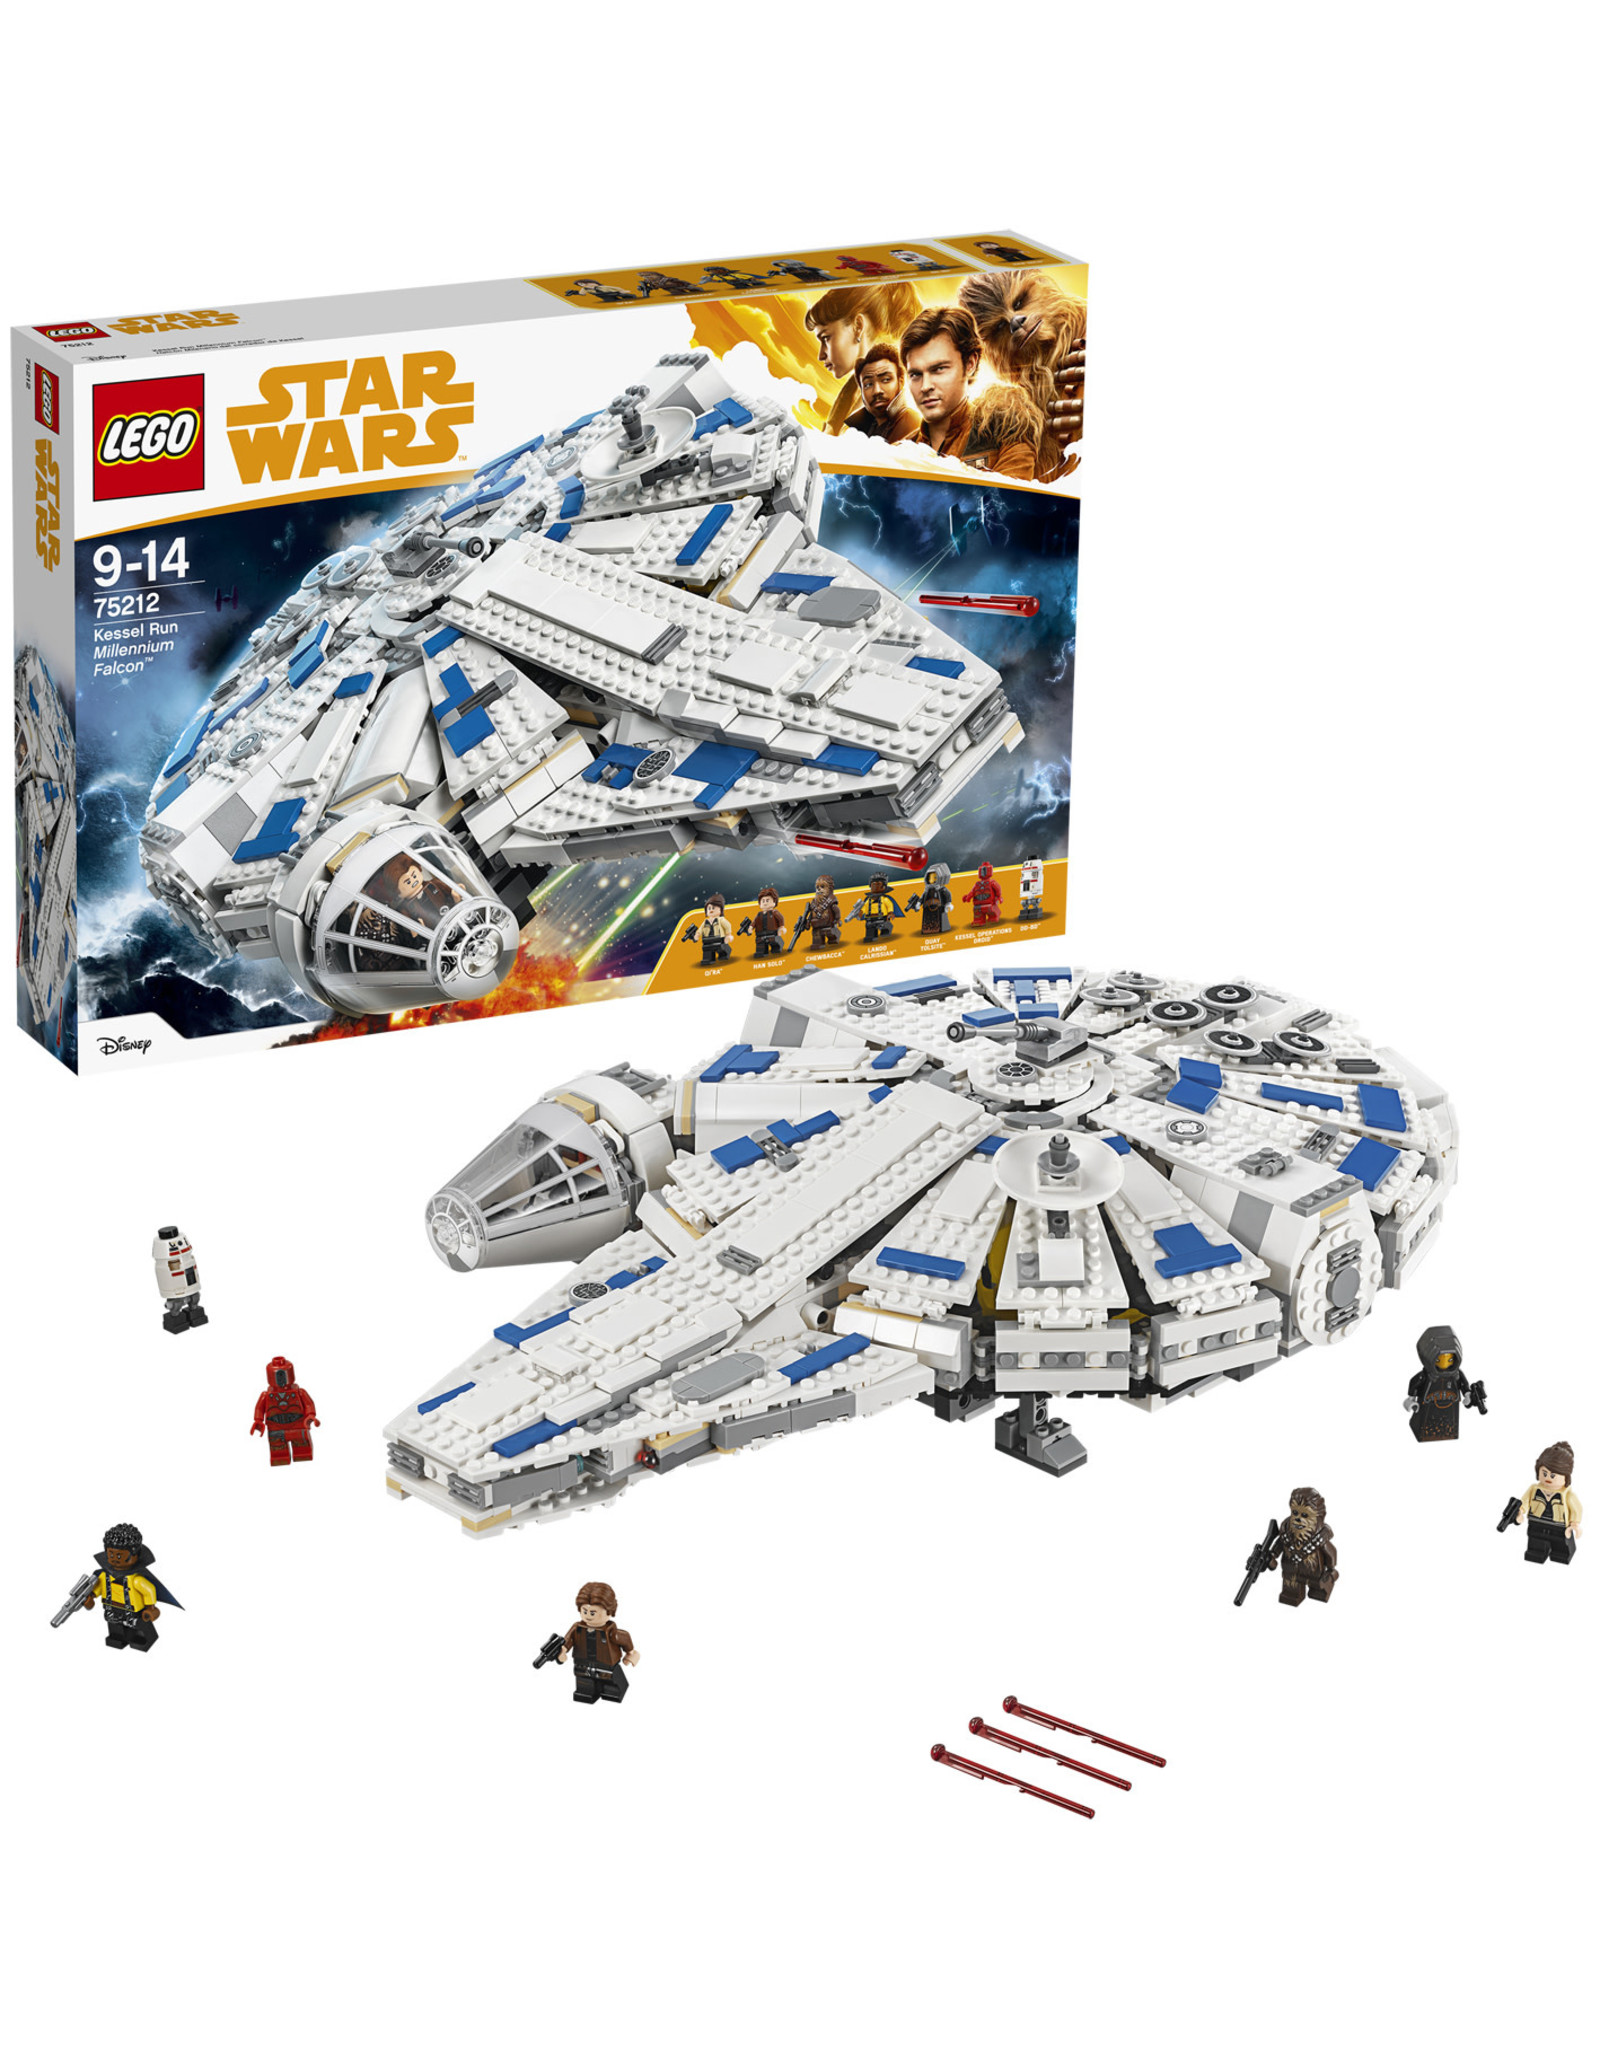 LEGO Lego  Star Wars 75212 Kessel Run Millennium Falcon